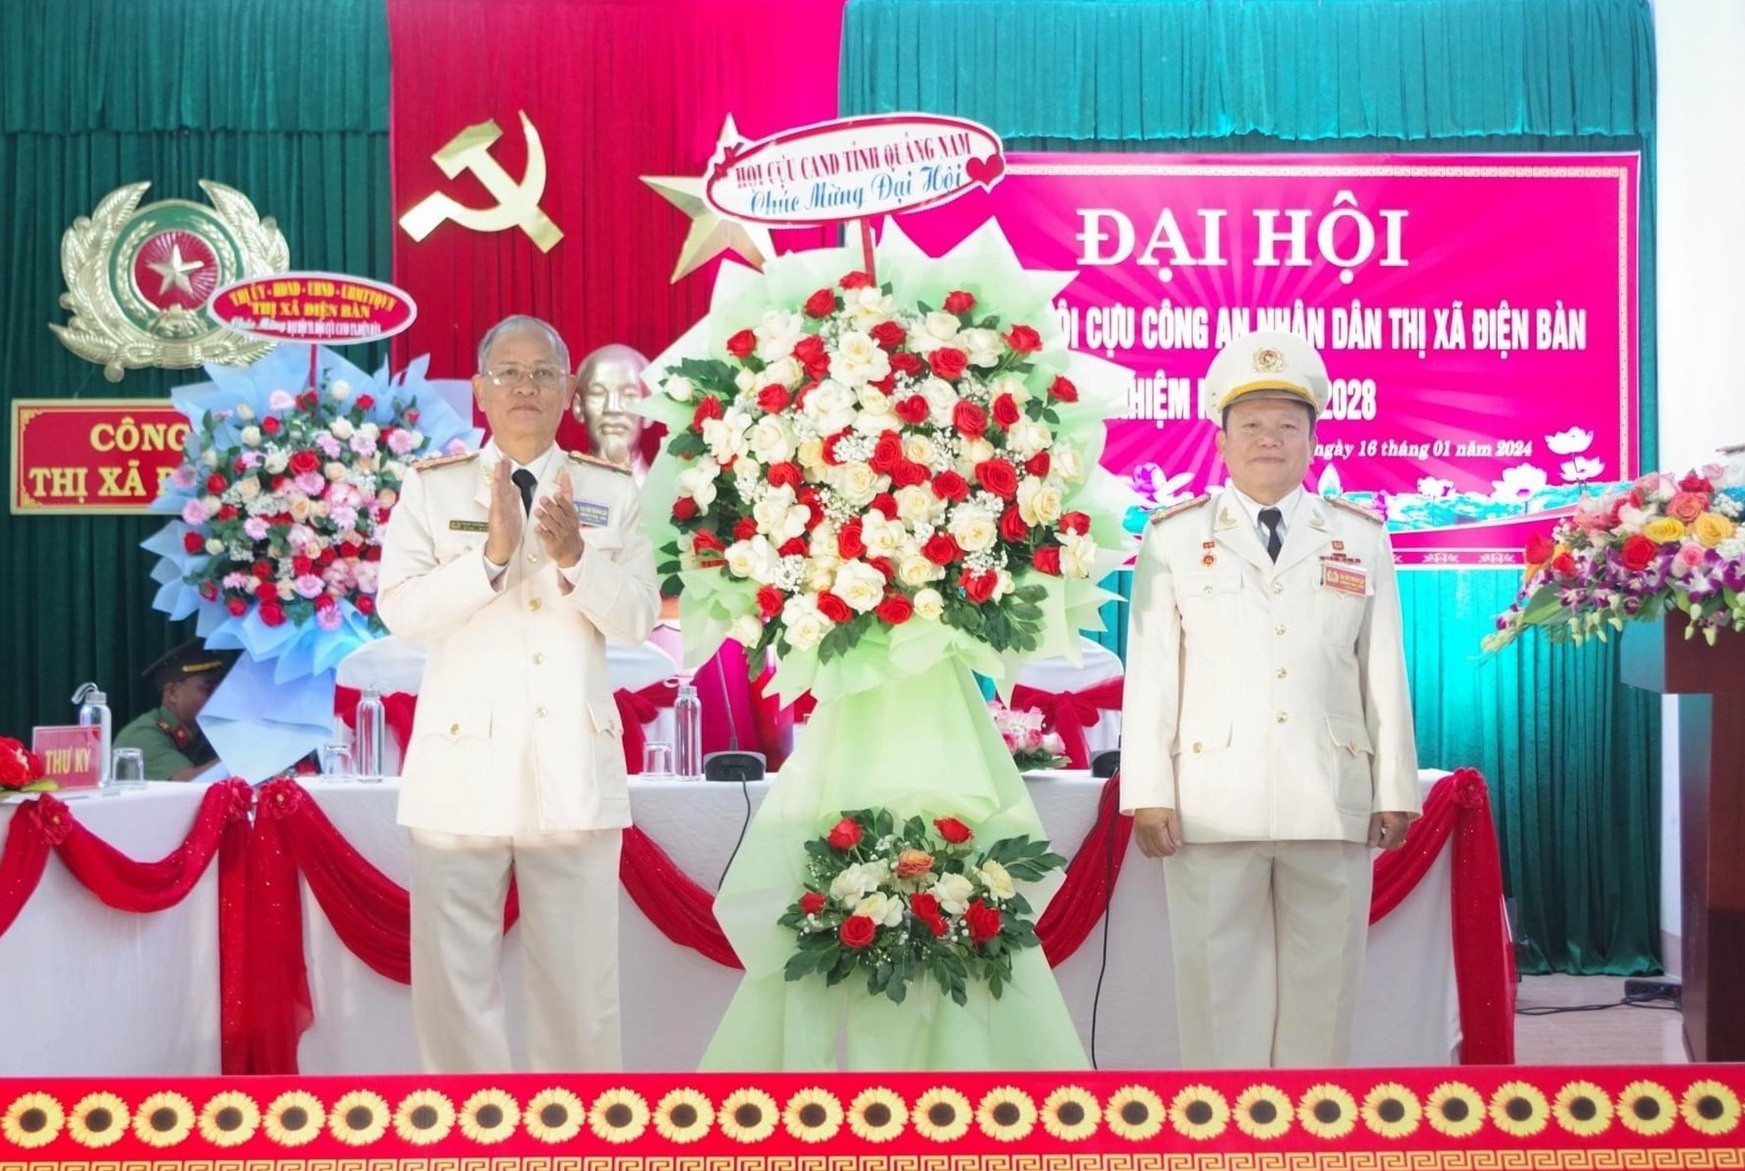 Ông Trà Thanh Hoàng (bên phải) được bầu giữ chức Chủ tịch Hội Cựu Công an nhân dân thị xã Điện Bàn, nhiệm kỳ 2023-2028. Ảnh: C.A